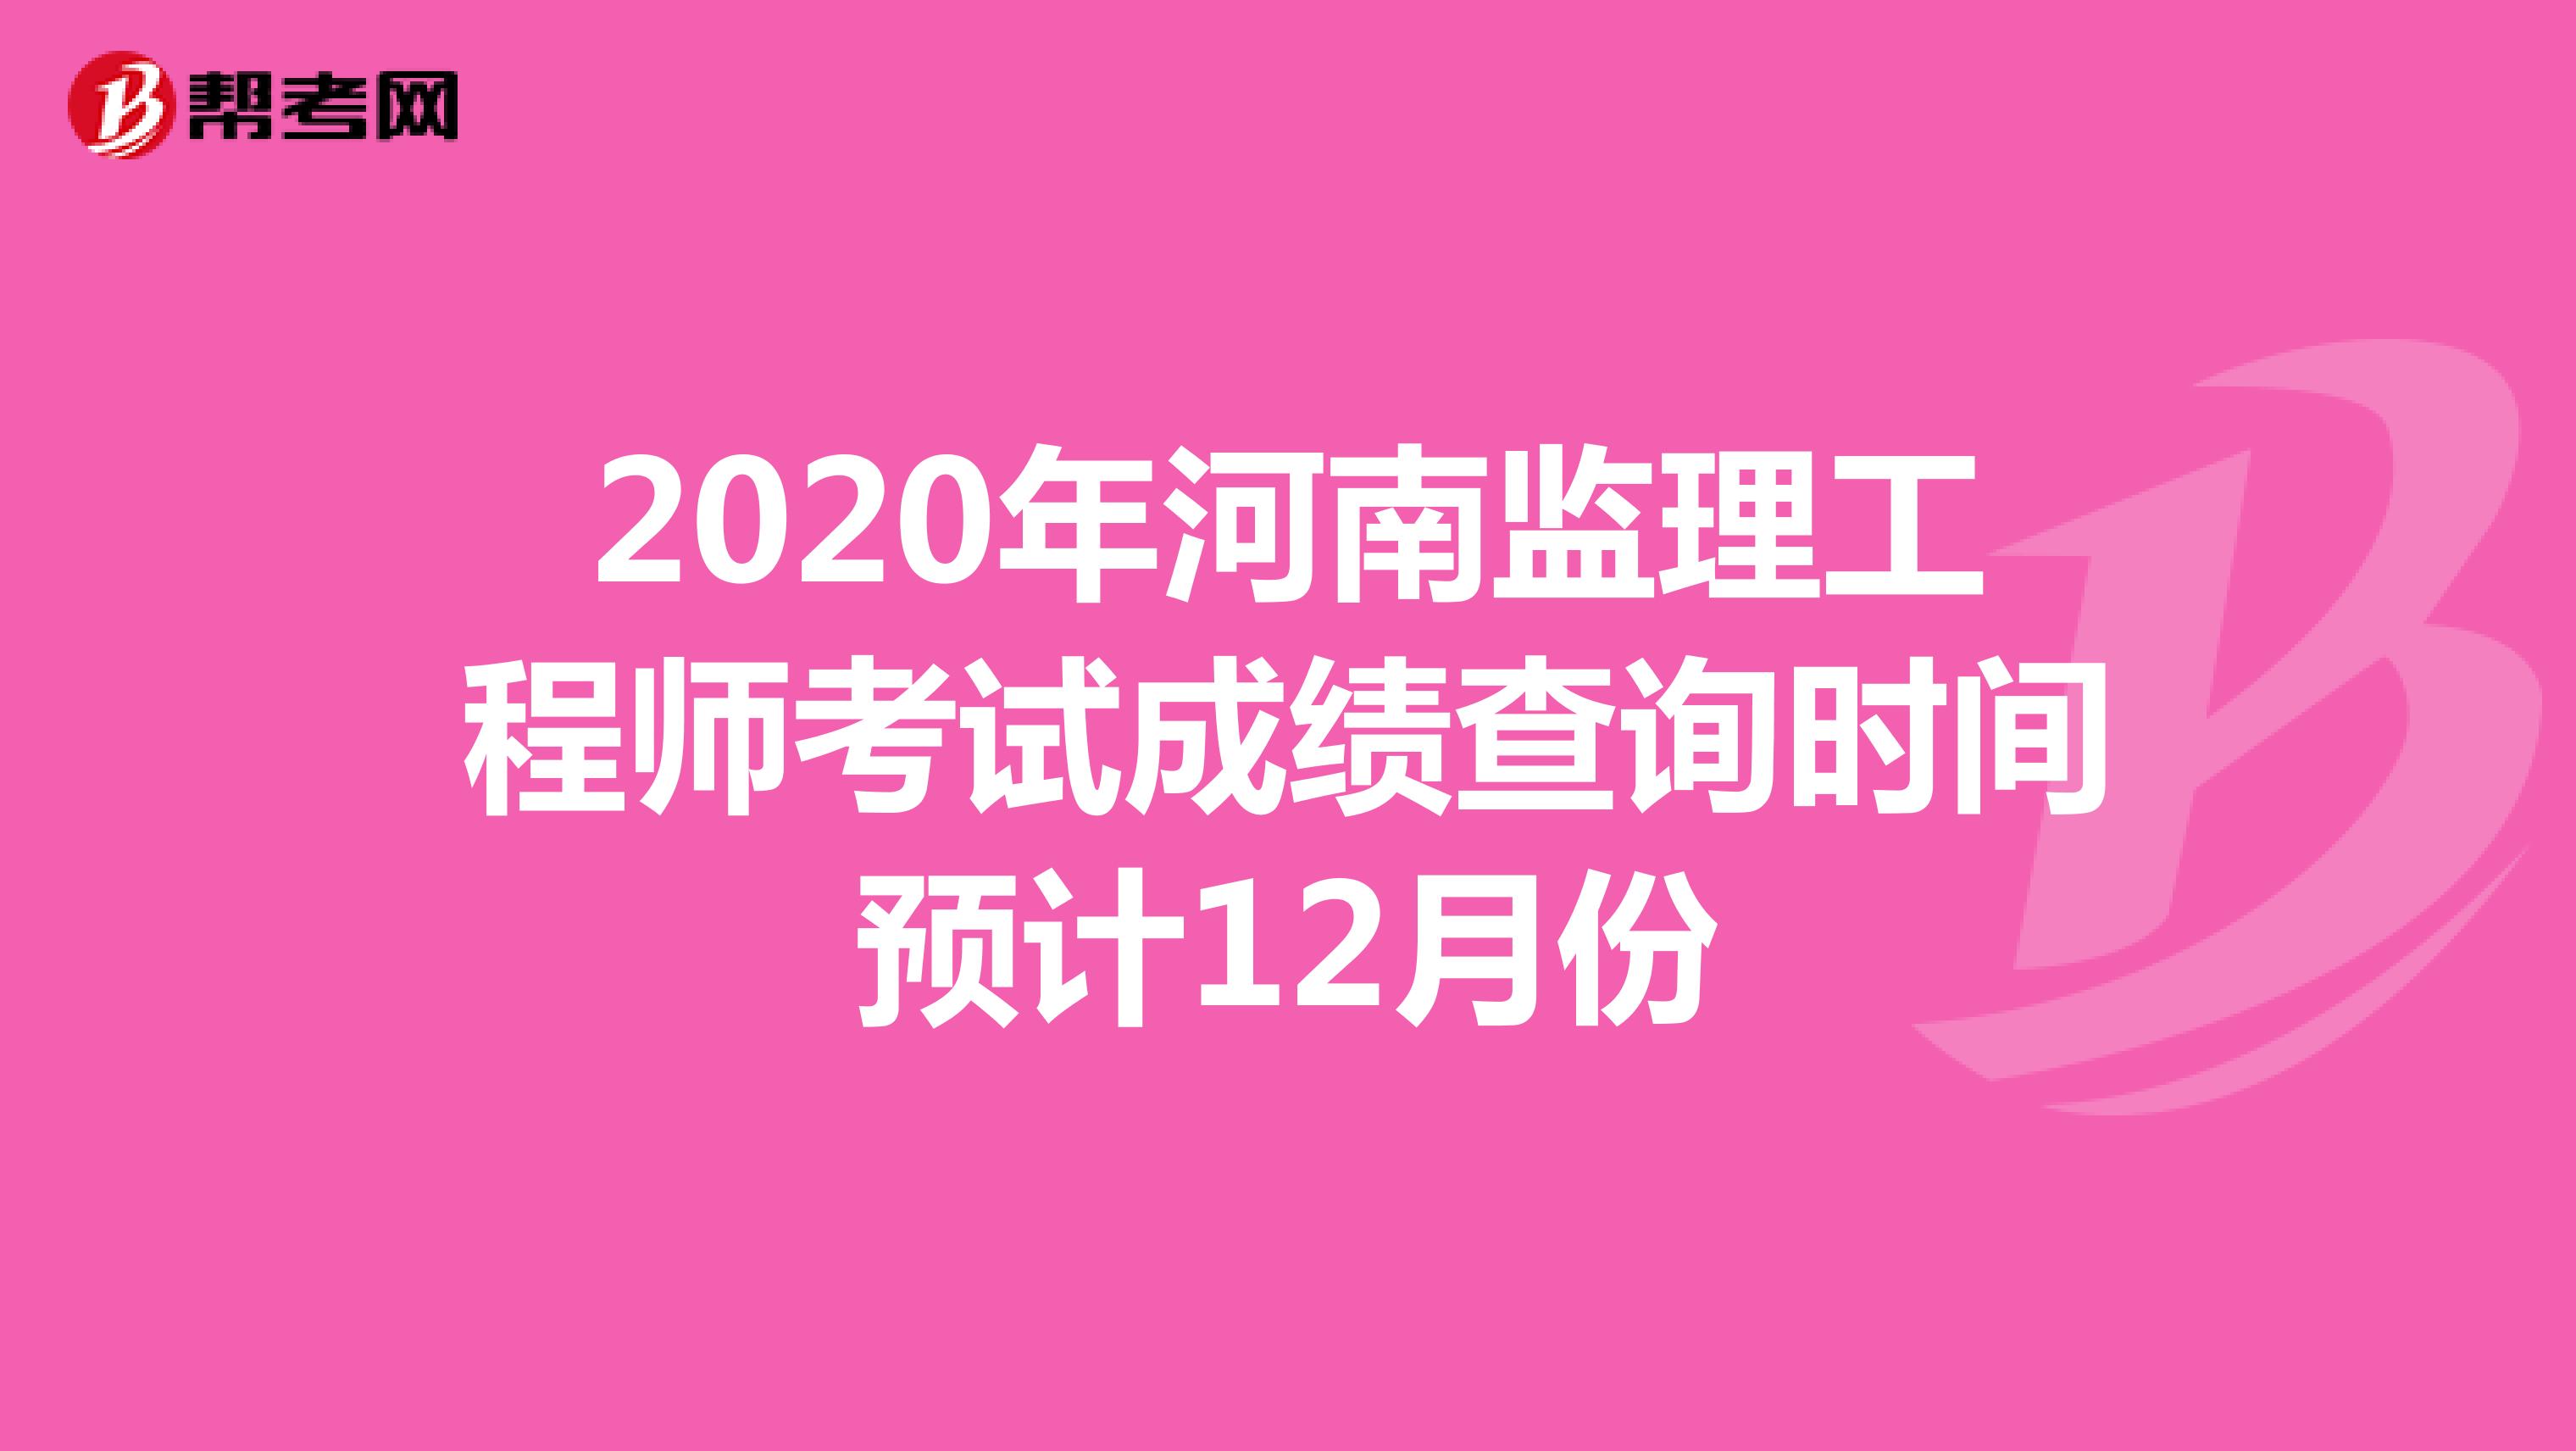 2020年河南监理工程师考试成绩查询时间预计12月份